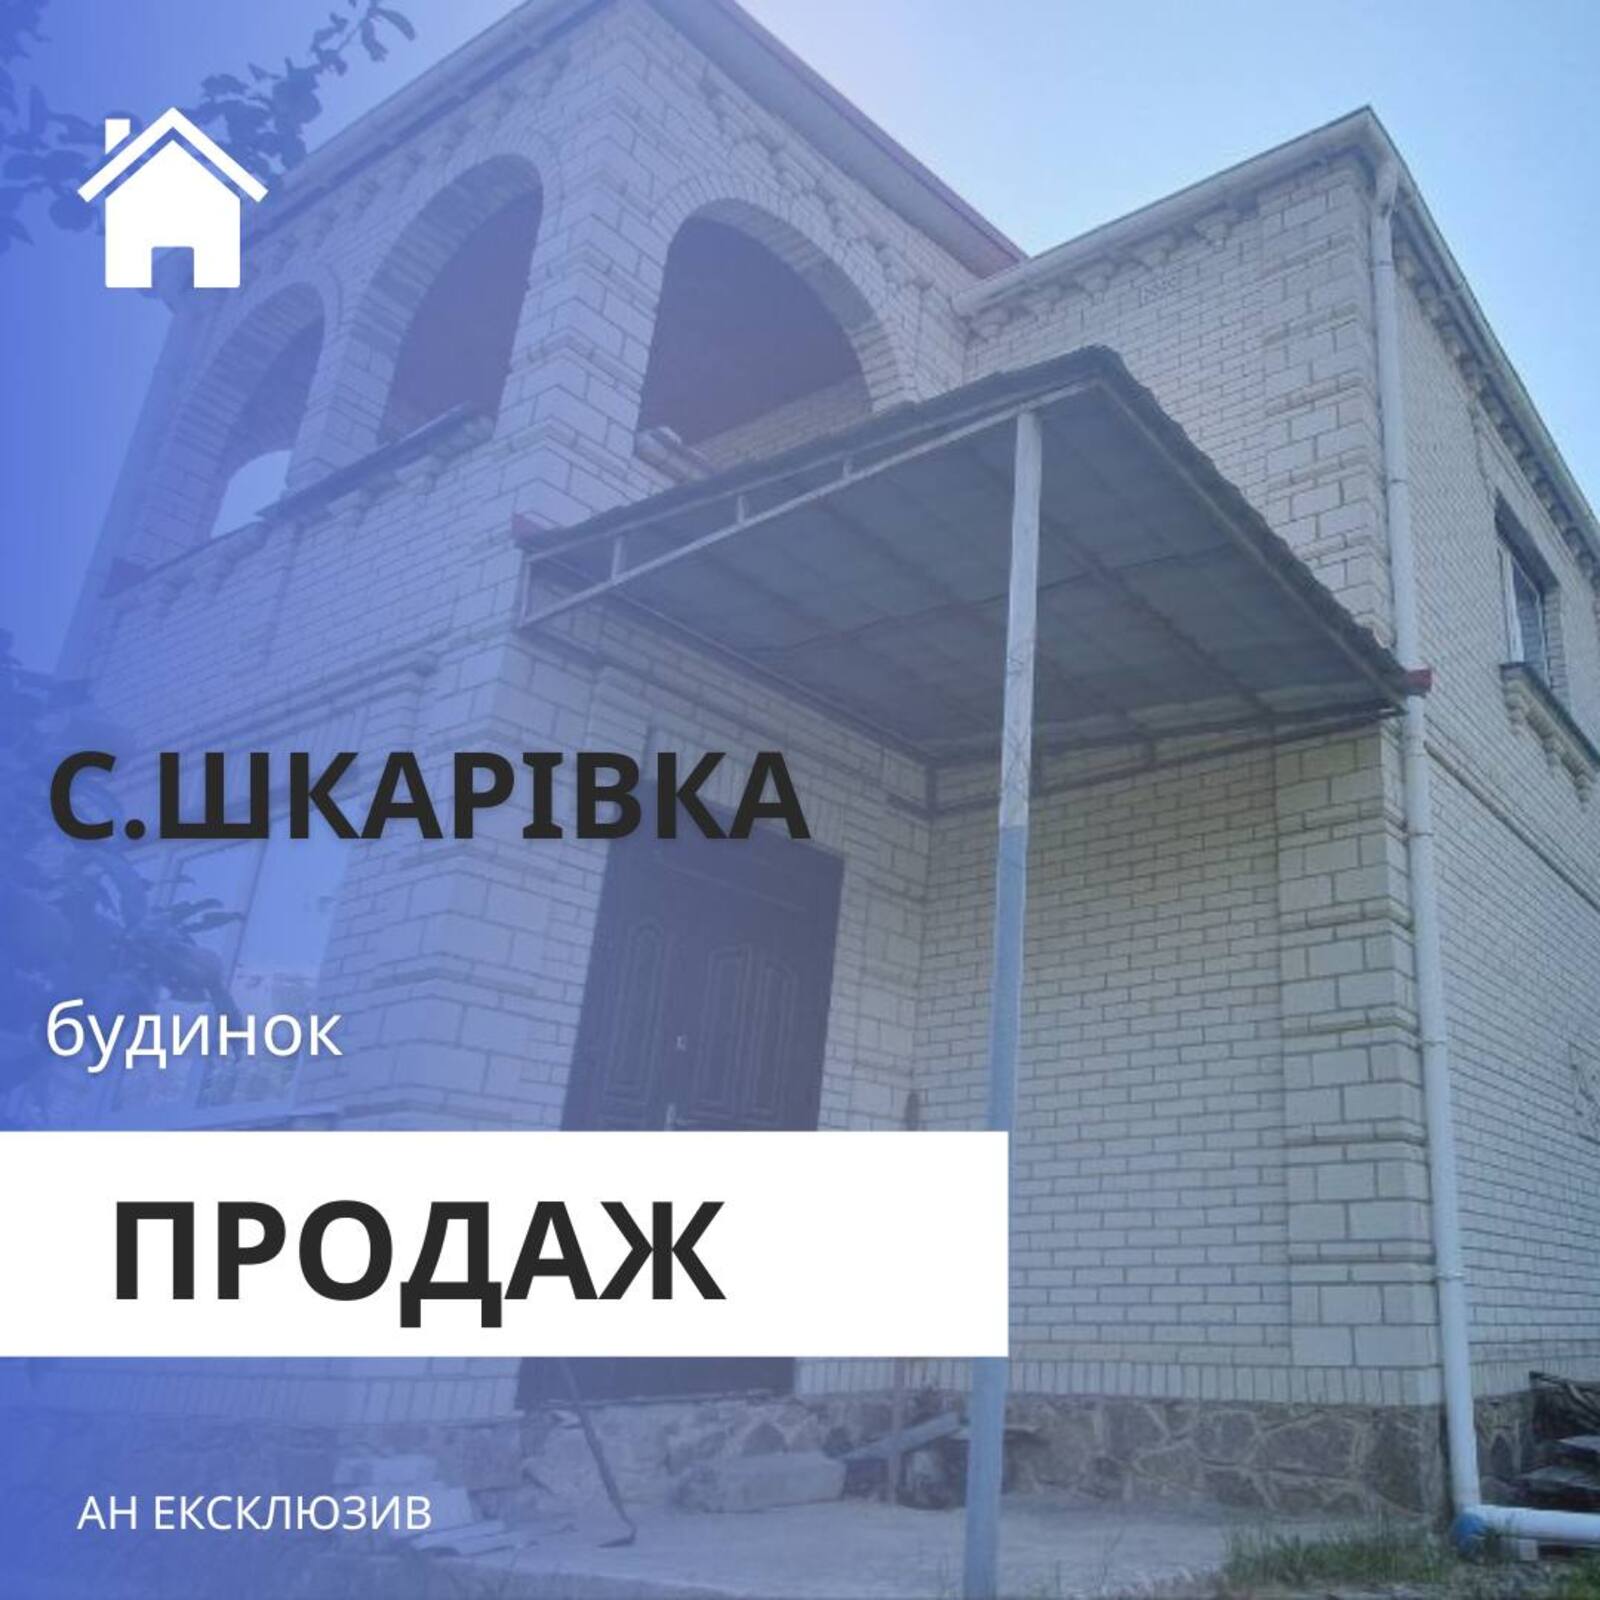 Продаж будинків Шкарівка